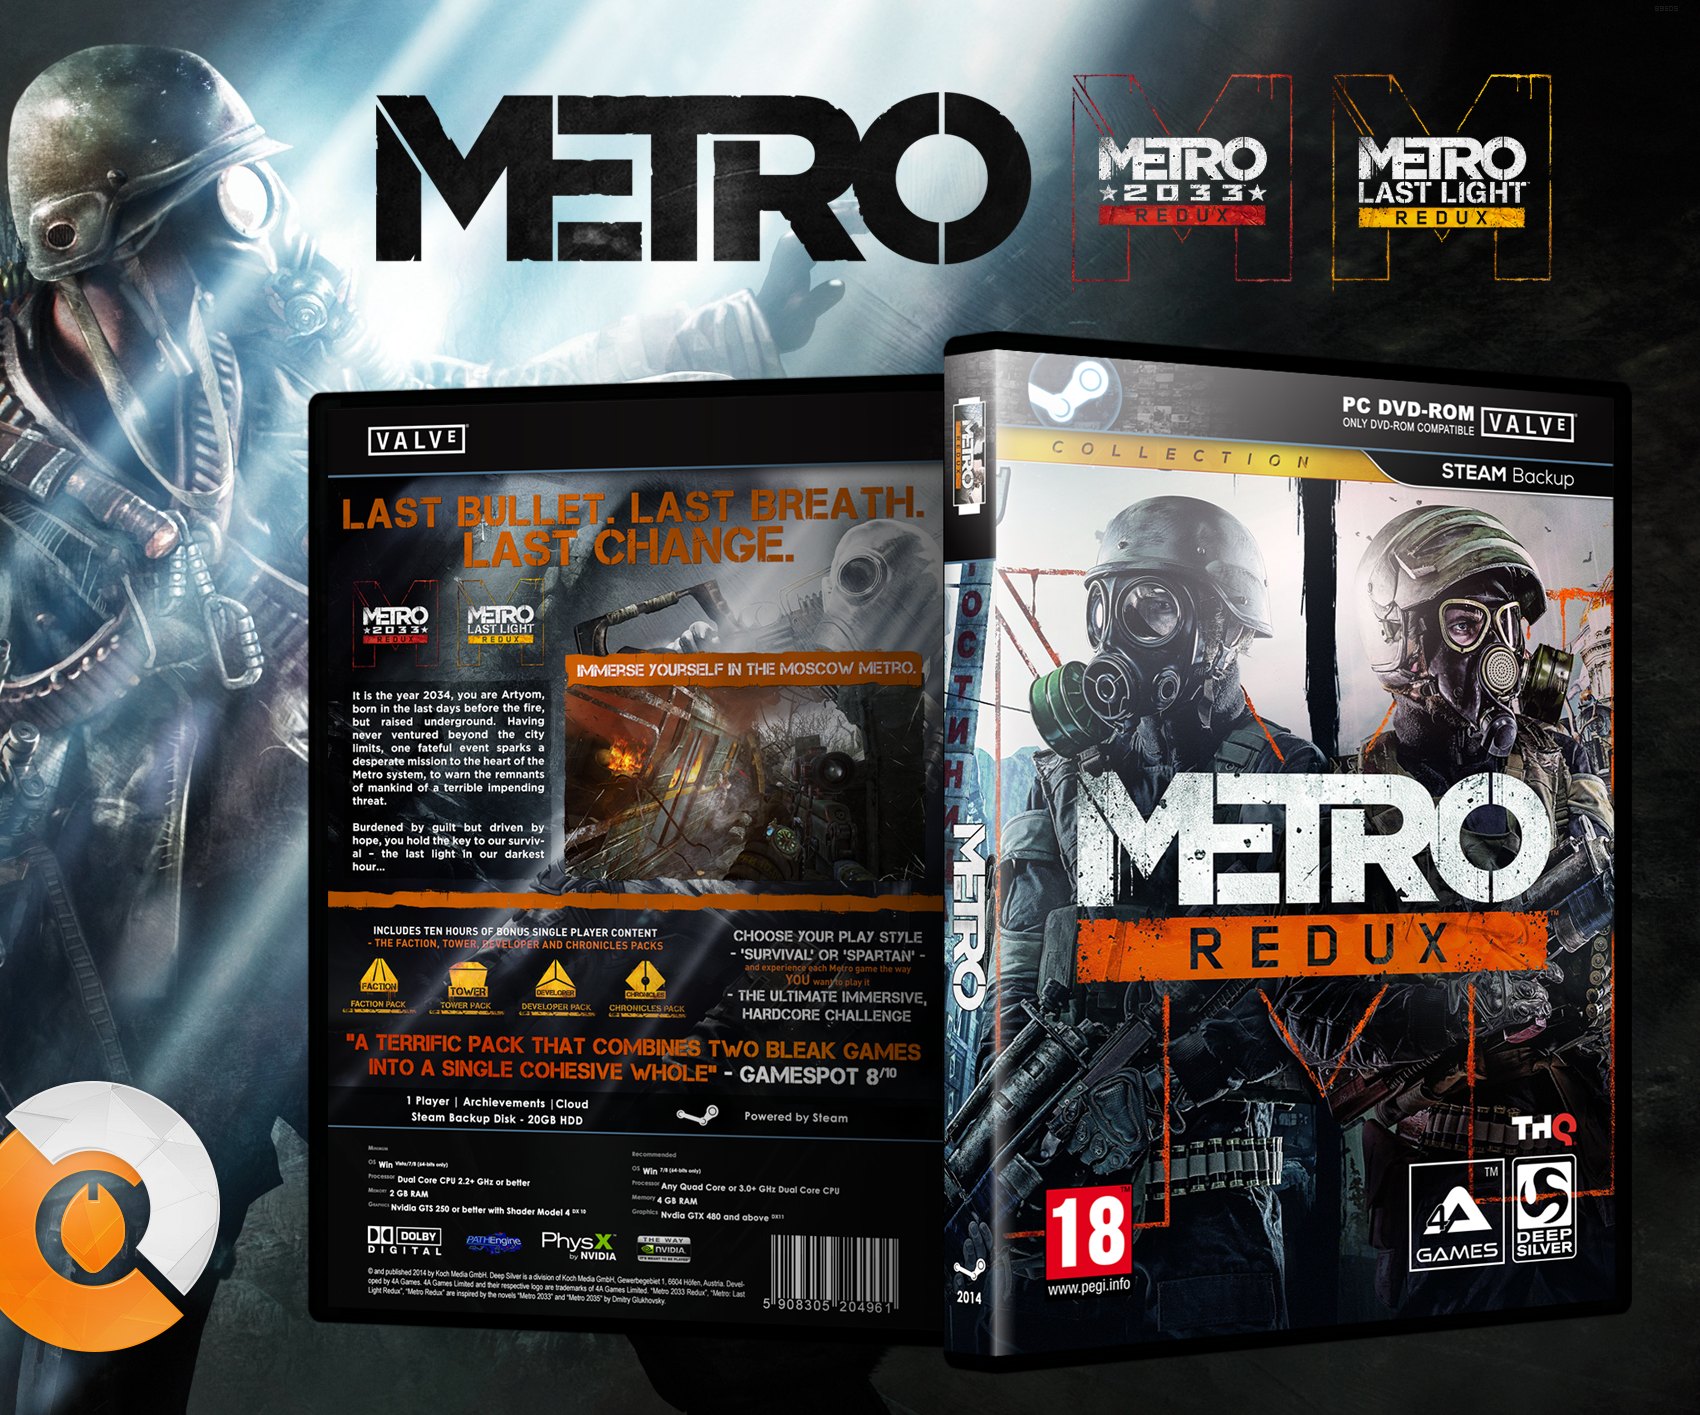 Redux steam. Metro Redux ps4 диск. Диск метро 2033 редукс. Metro Redux Sony ps4 диск. Metro 2033 Redux обложка.